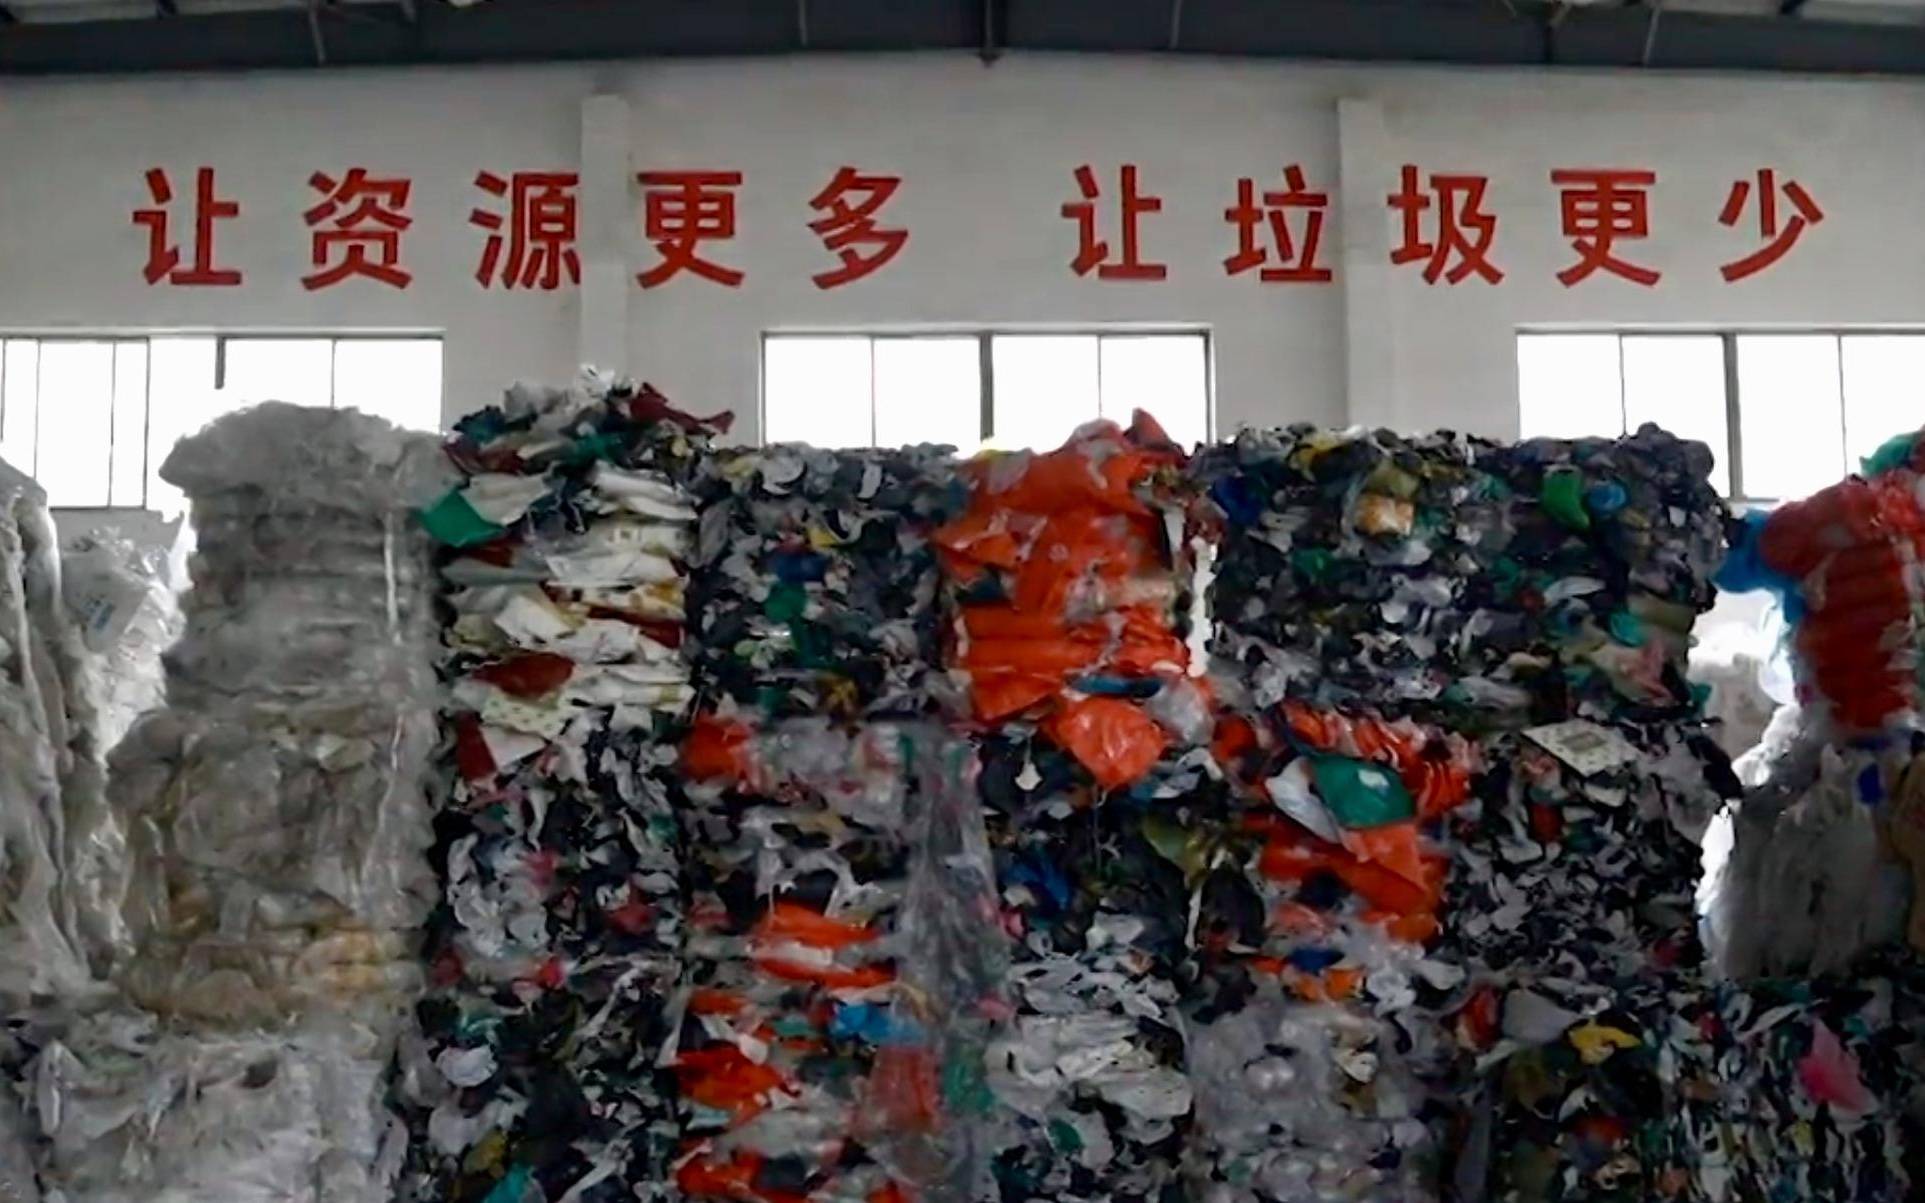 居民囤积垃圾被强制清理，给社区生活提了个醒 | 新京报快评